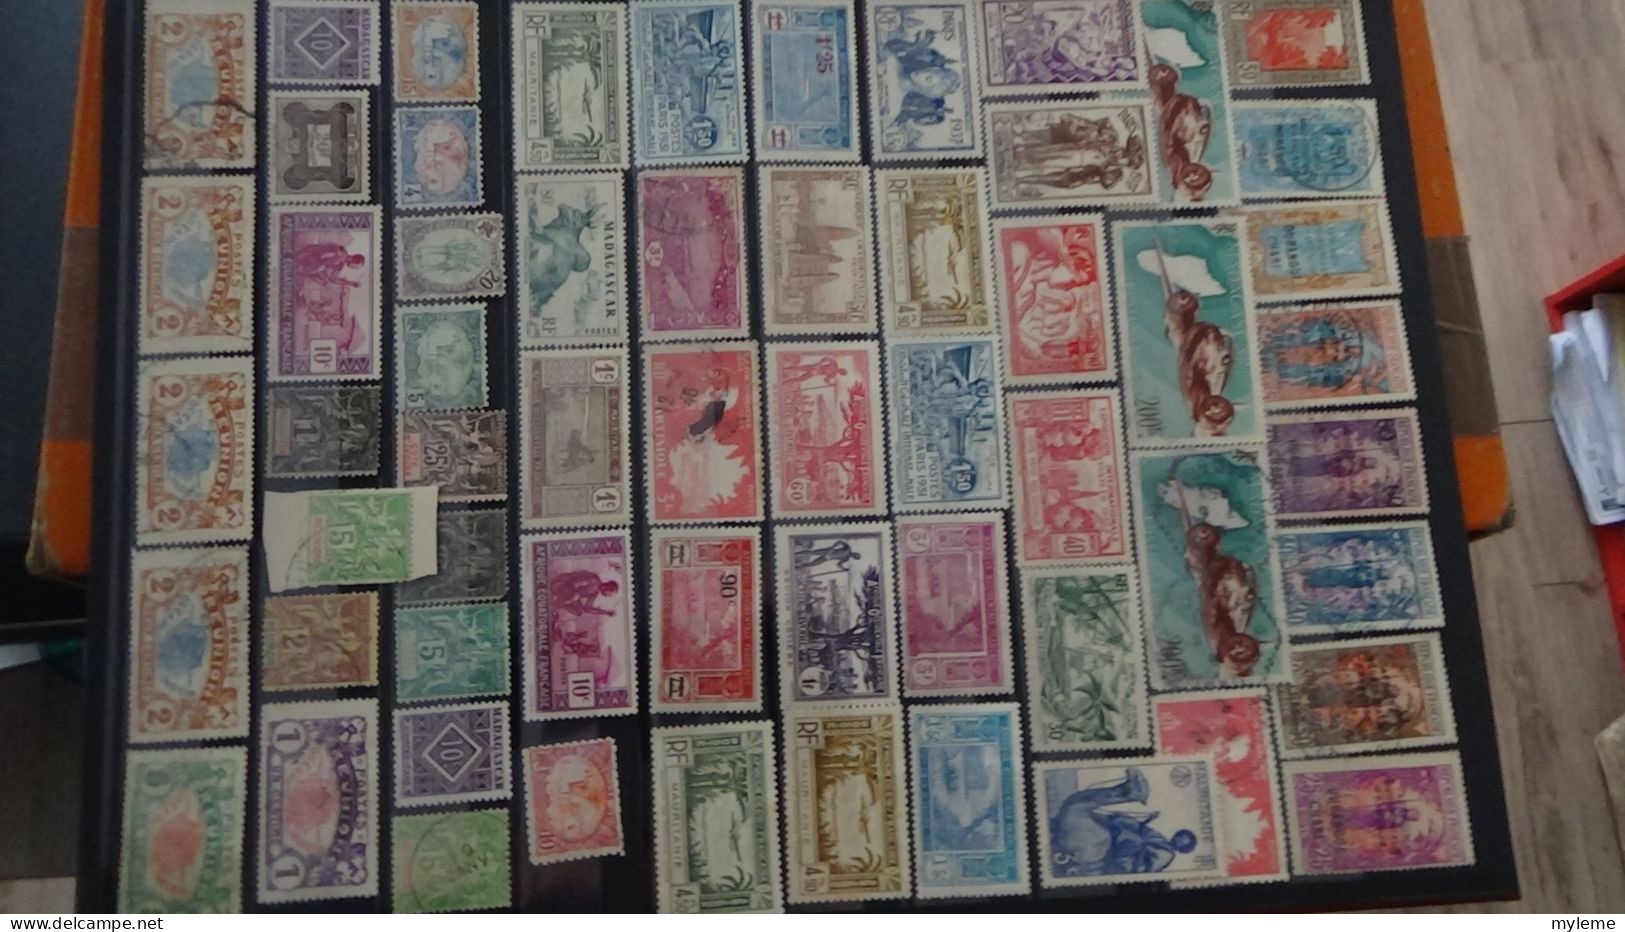 AZ105 Bel ensemble de timbres des anciennes colonies Françaises  A saisir !!!